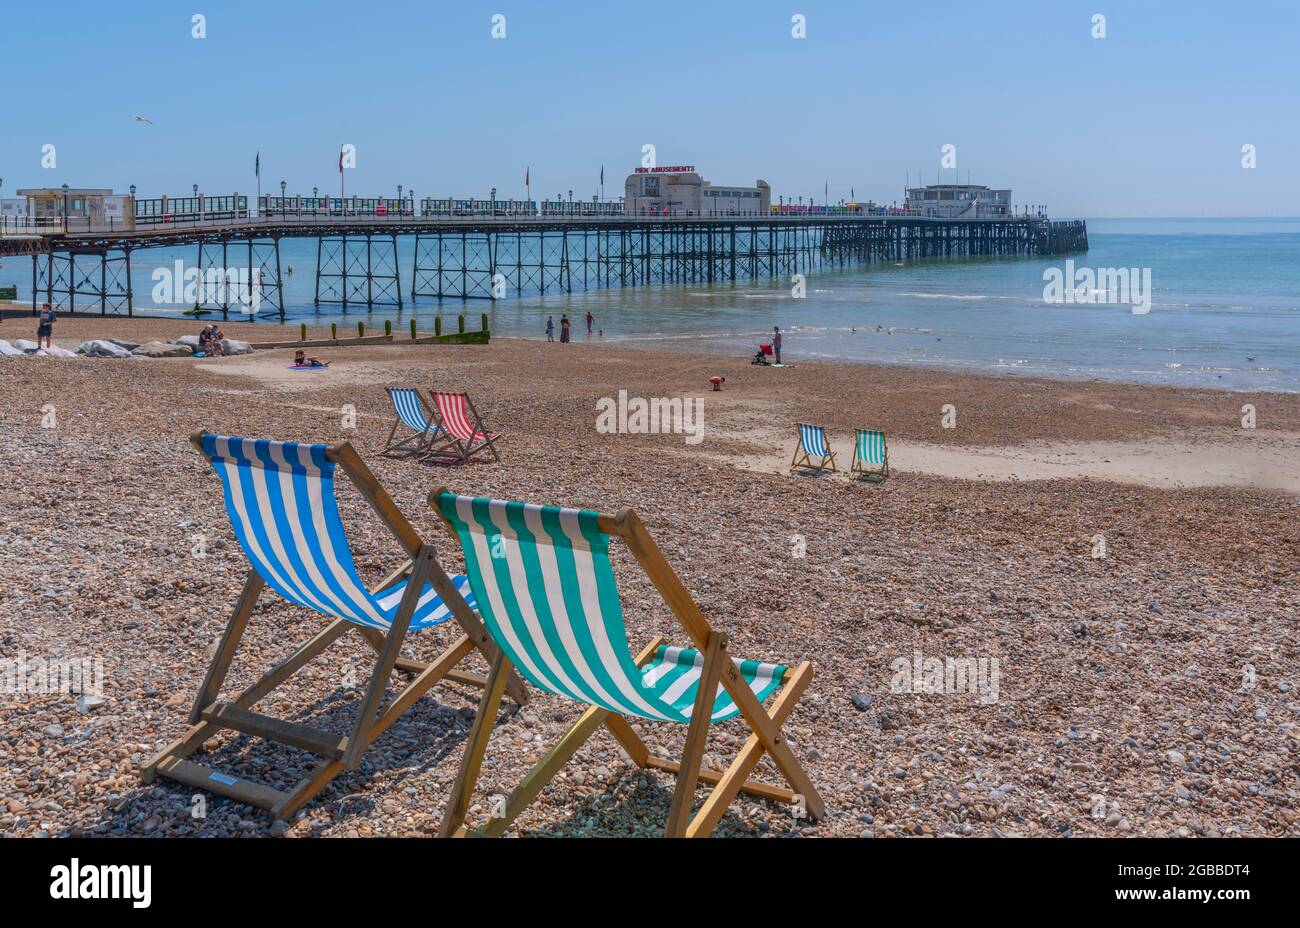 Vue sur Worthing Pier et chaises longues colorées sur Worthing Beach, Worthing, West Sussex, Angleterre, Royaume-Uni, Europe Banque D'Images